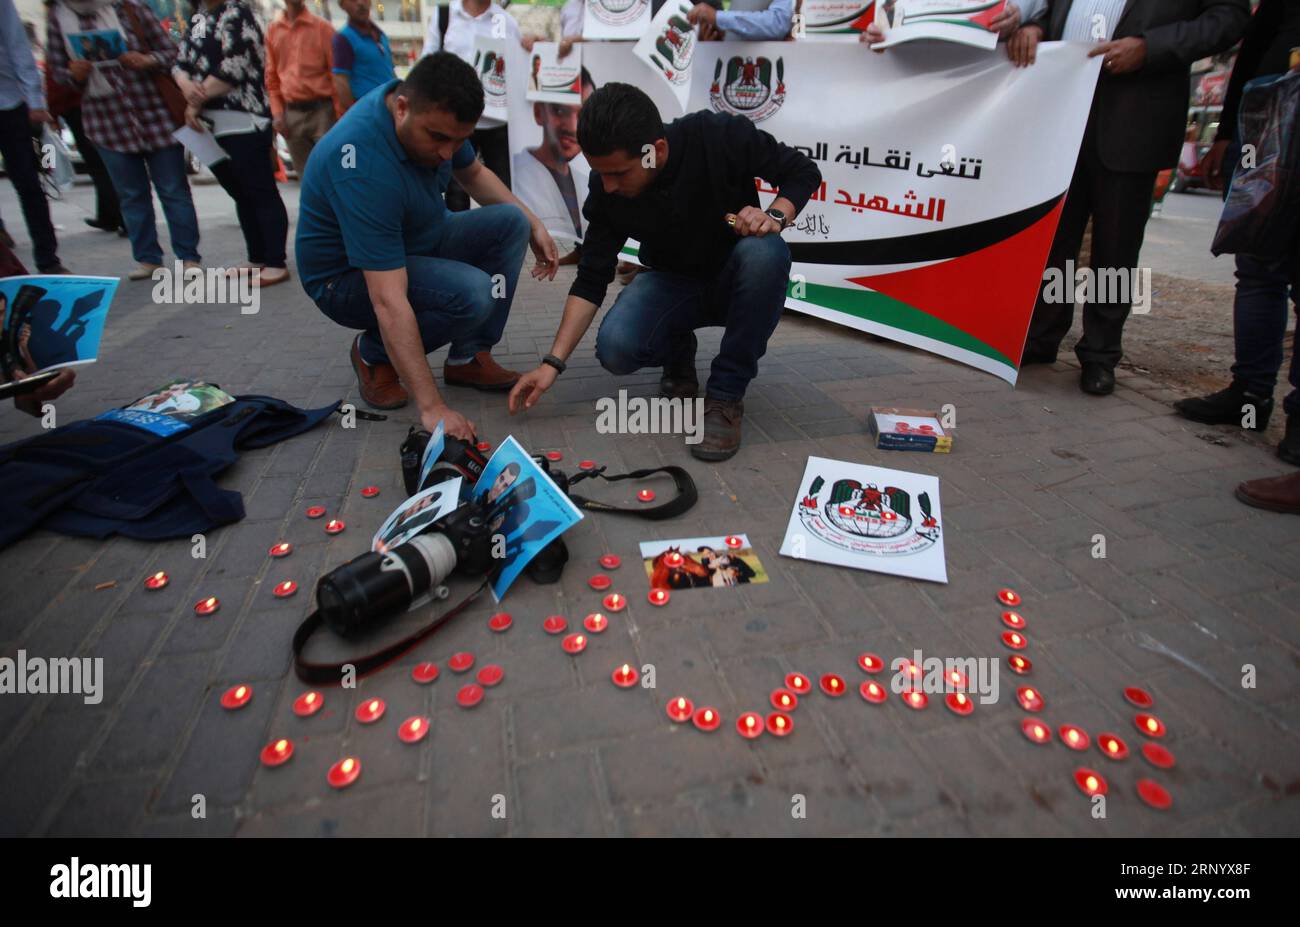 (180407) -- NAPLOUSE, 7 avril 2018 -- des journalistes palestiniens allument des bougies autour de photos du journaliste palestinien Yasser Murtaga dans la ville de Naplouse, en Cisjordanie, le 7 avril 2018. Yasser Murtaga, journaliste de 30 ans, couvrait les manifestations à l'est de Khan Younis lorsqu'il a été abattu et est mort plus tard de sa blessure. MIDEAST-NAPLOUSE-GAZA RASSEMBLEMENT-JOURNALISTE-MORT-DEUIL NIDALXESHTAYEH PUBLICATIONXNOTXINXCHN Banque D'Images